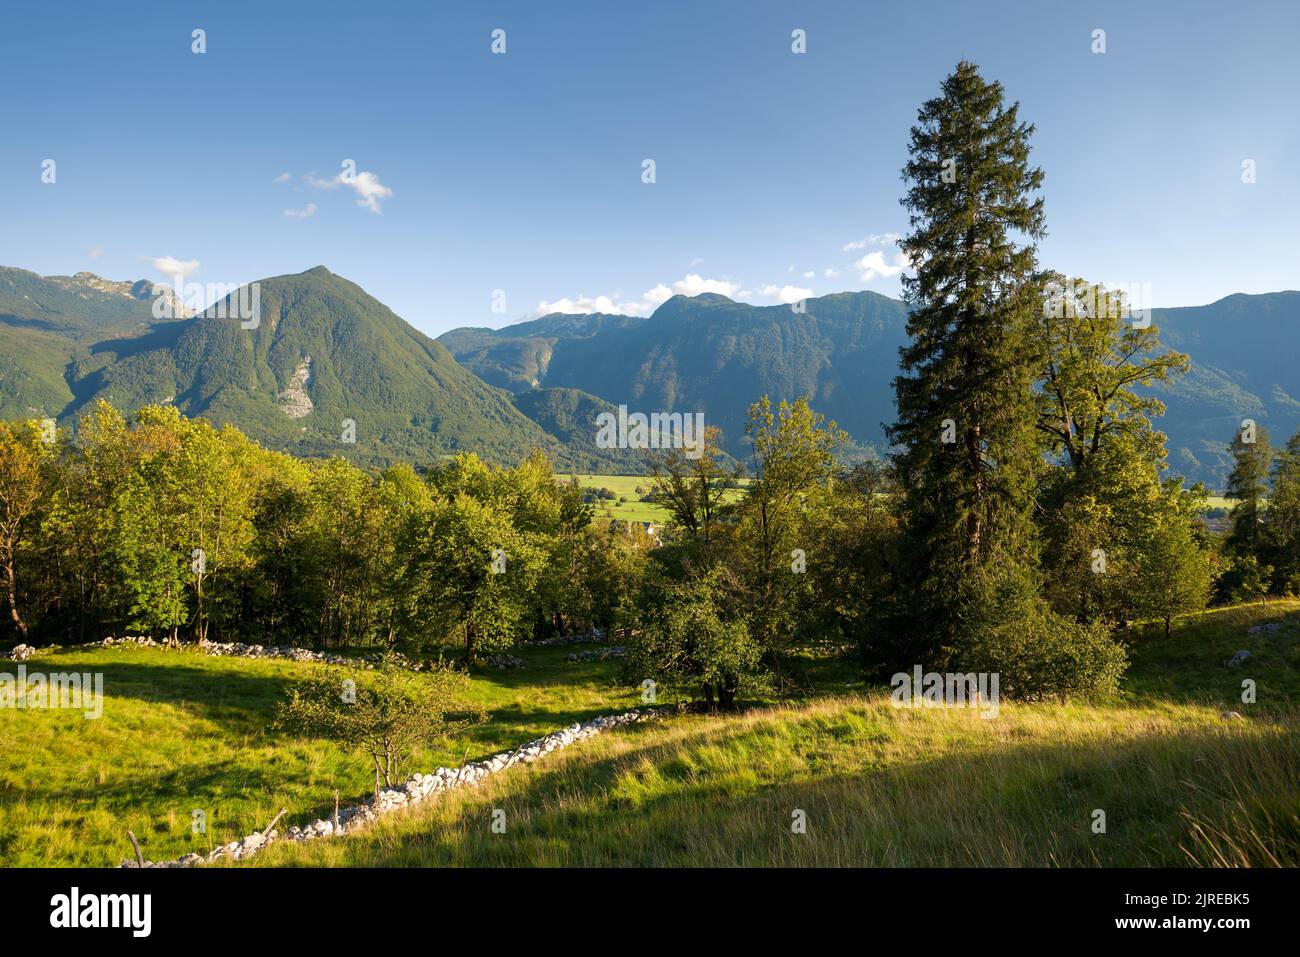 Alpine landscape in Slovenia Stock Photo